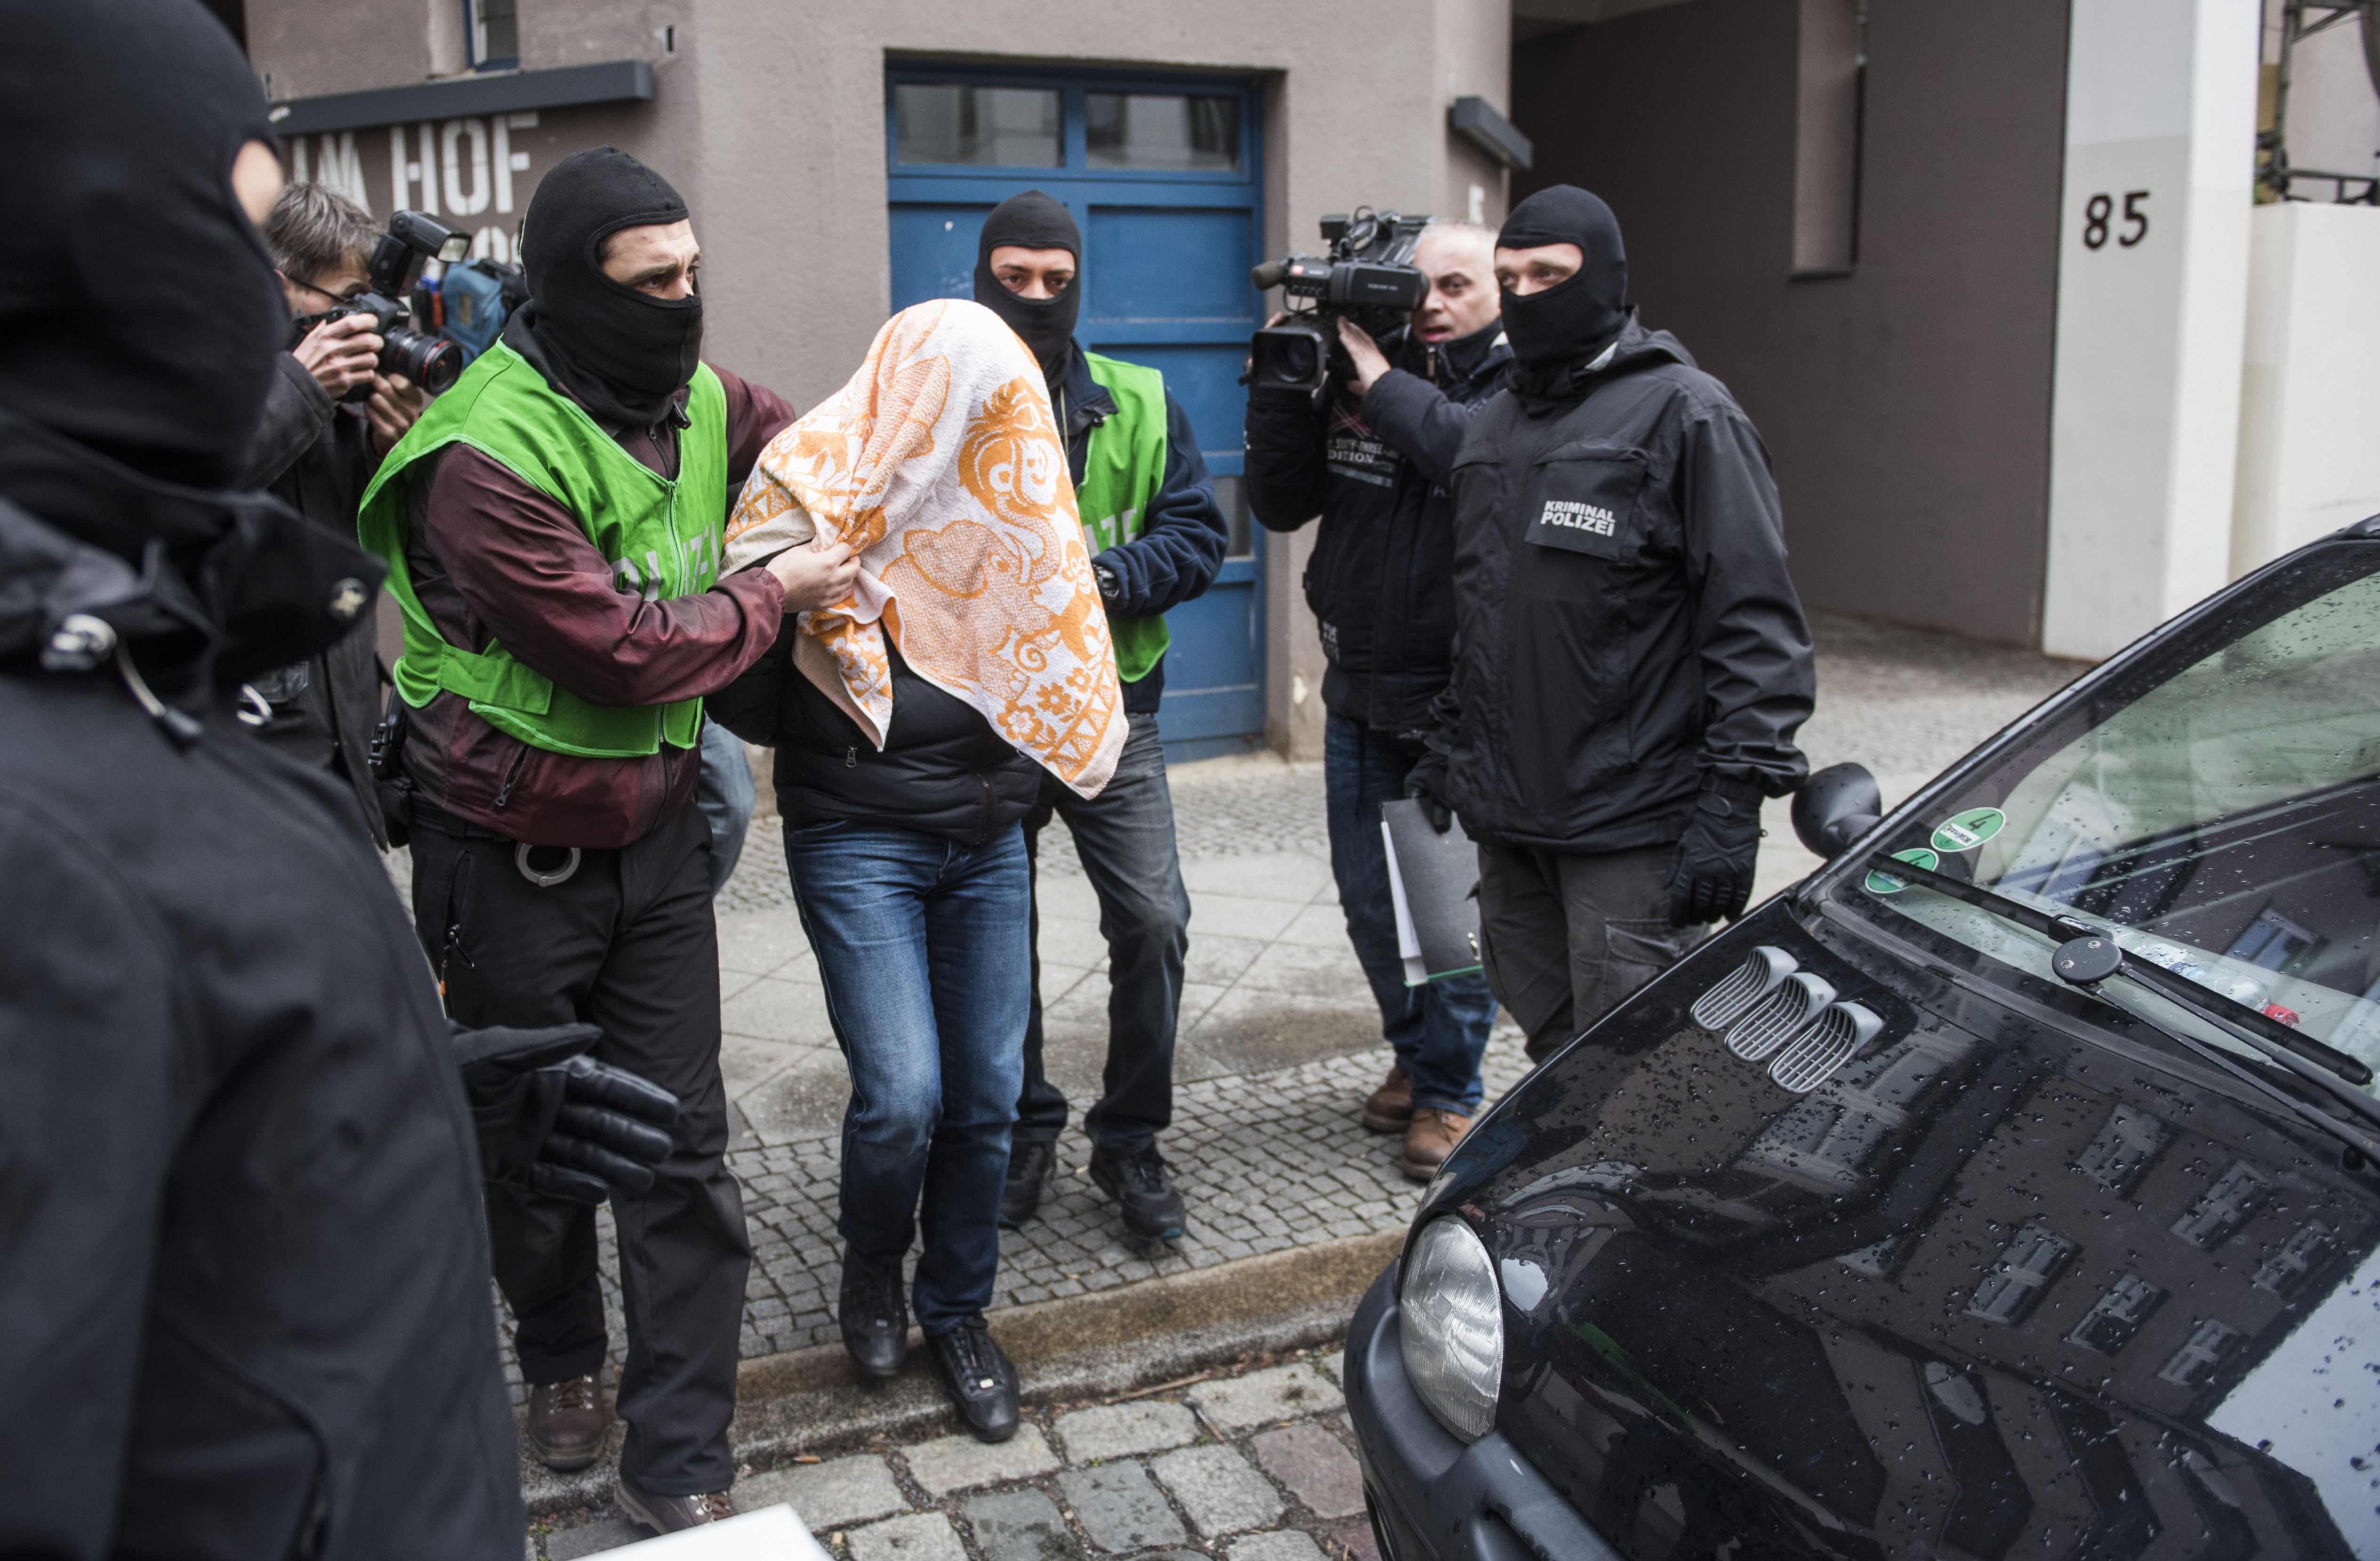 Merényleteket előkészítő dzsihádistákat tartóztattak le Berlinben